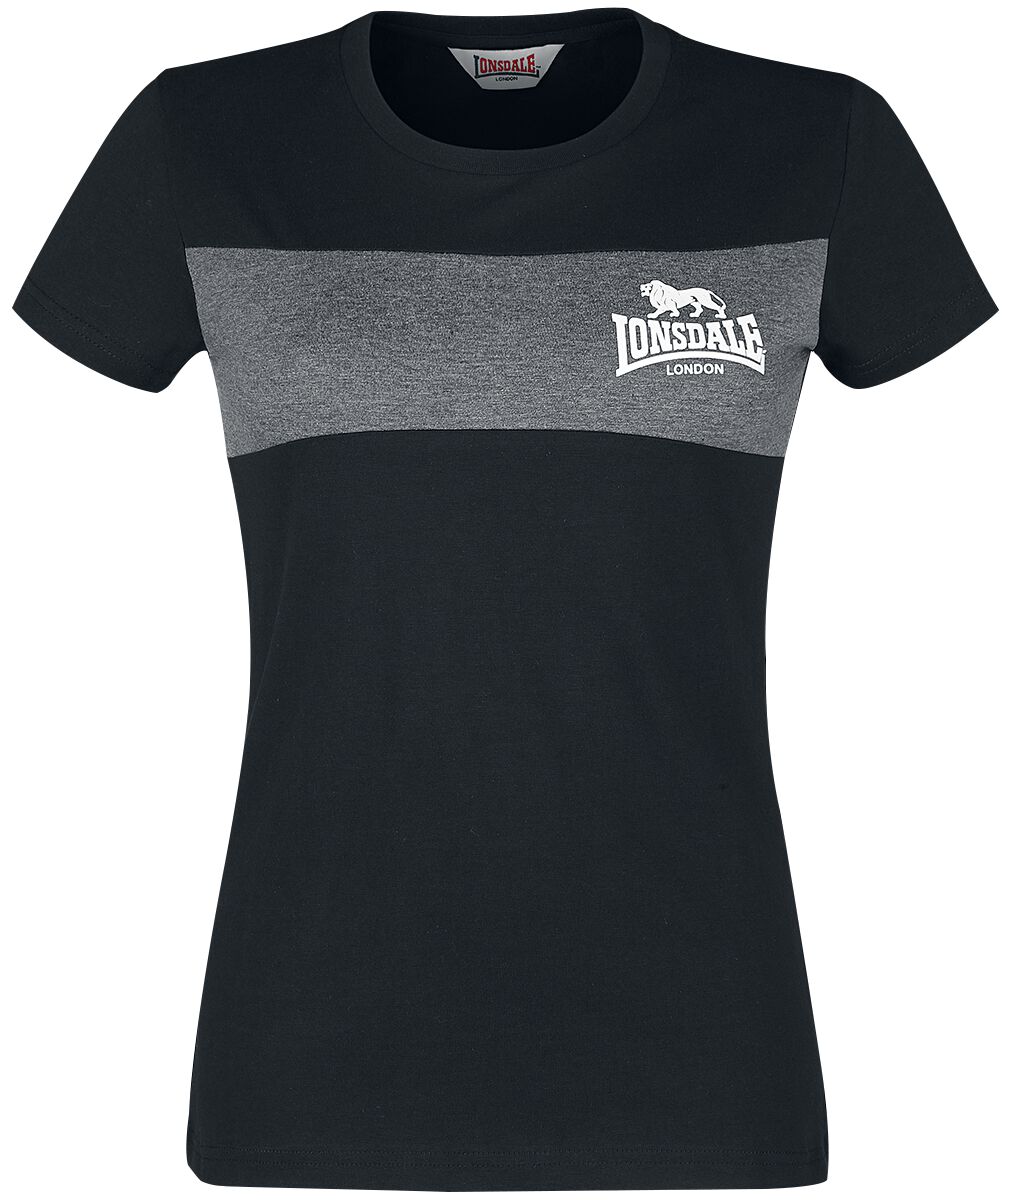 Lonsdale London T-Shirt - Dawsmere - XS bis 3XL - für Damen - Größe XXL - schwarz